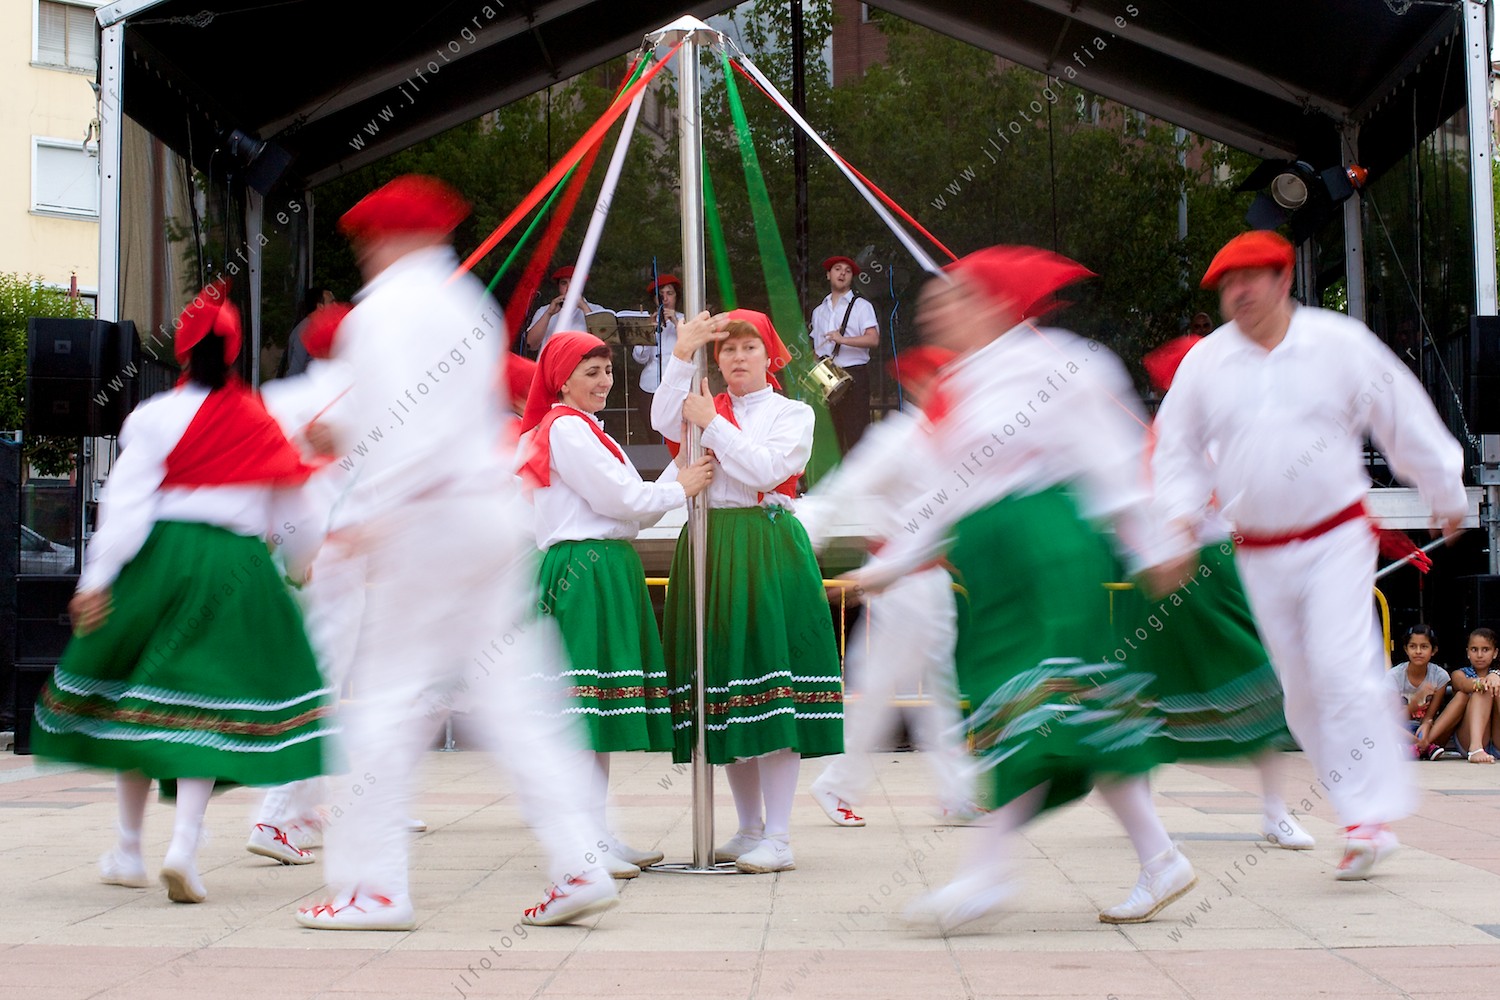 Danzas tradicionales vascas en el parque de los hermanos, durante las fiestas de Barakaldo